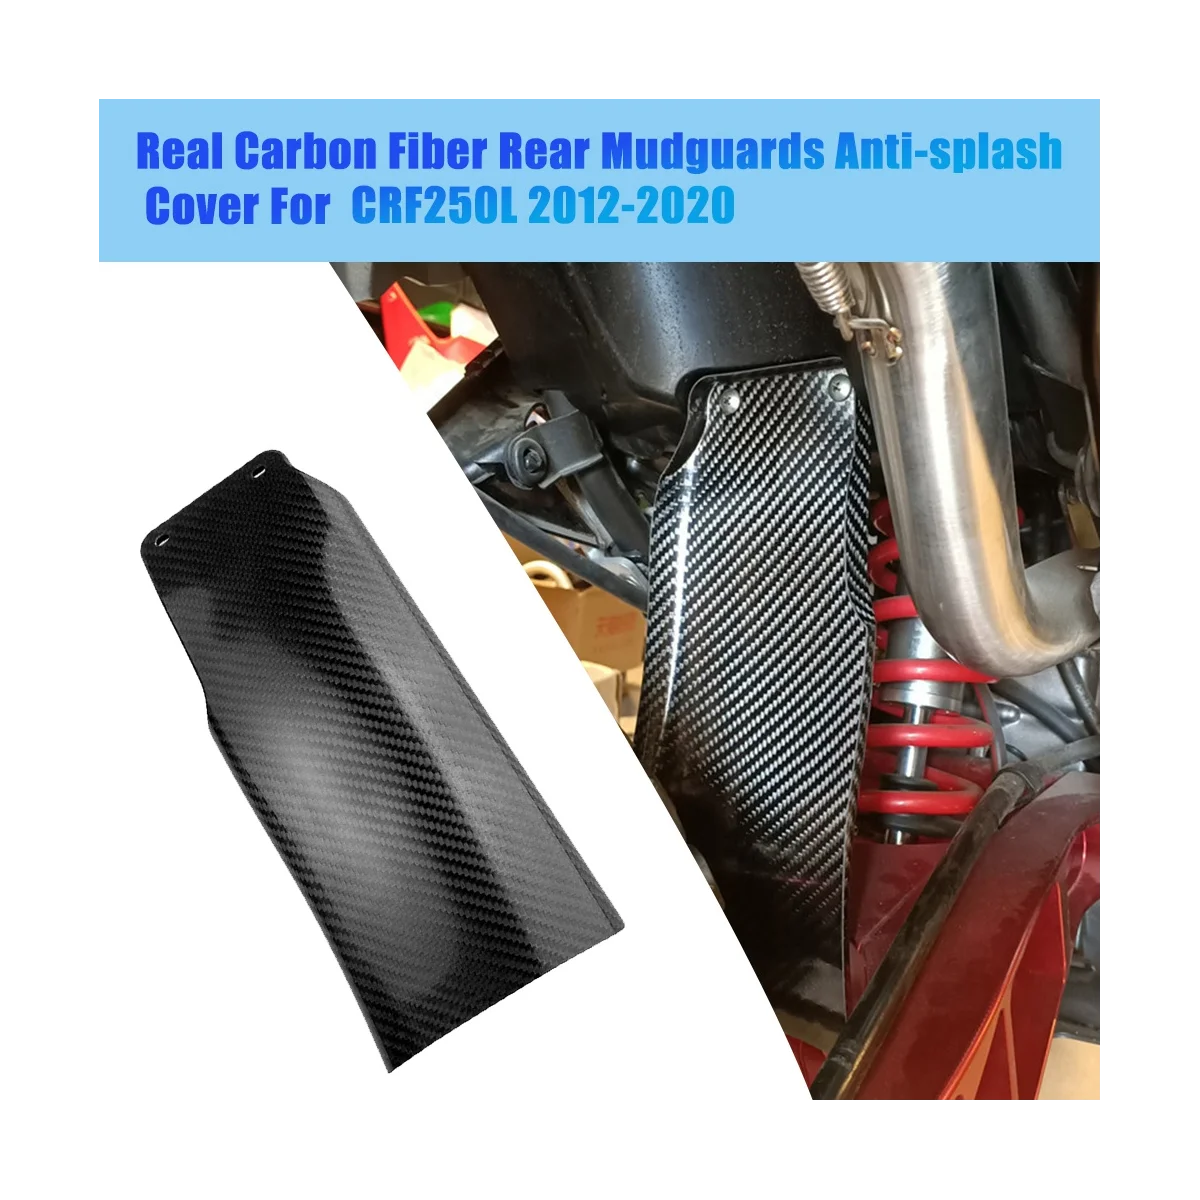 Задние брызговики из настоящего углеродного волокна для мотоциклов CRF250L 2012-2020, Противоударные щитки против брызг 1